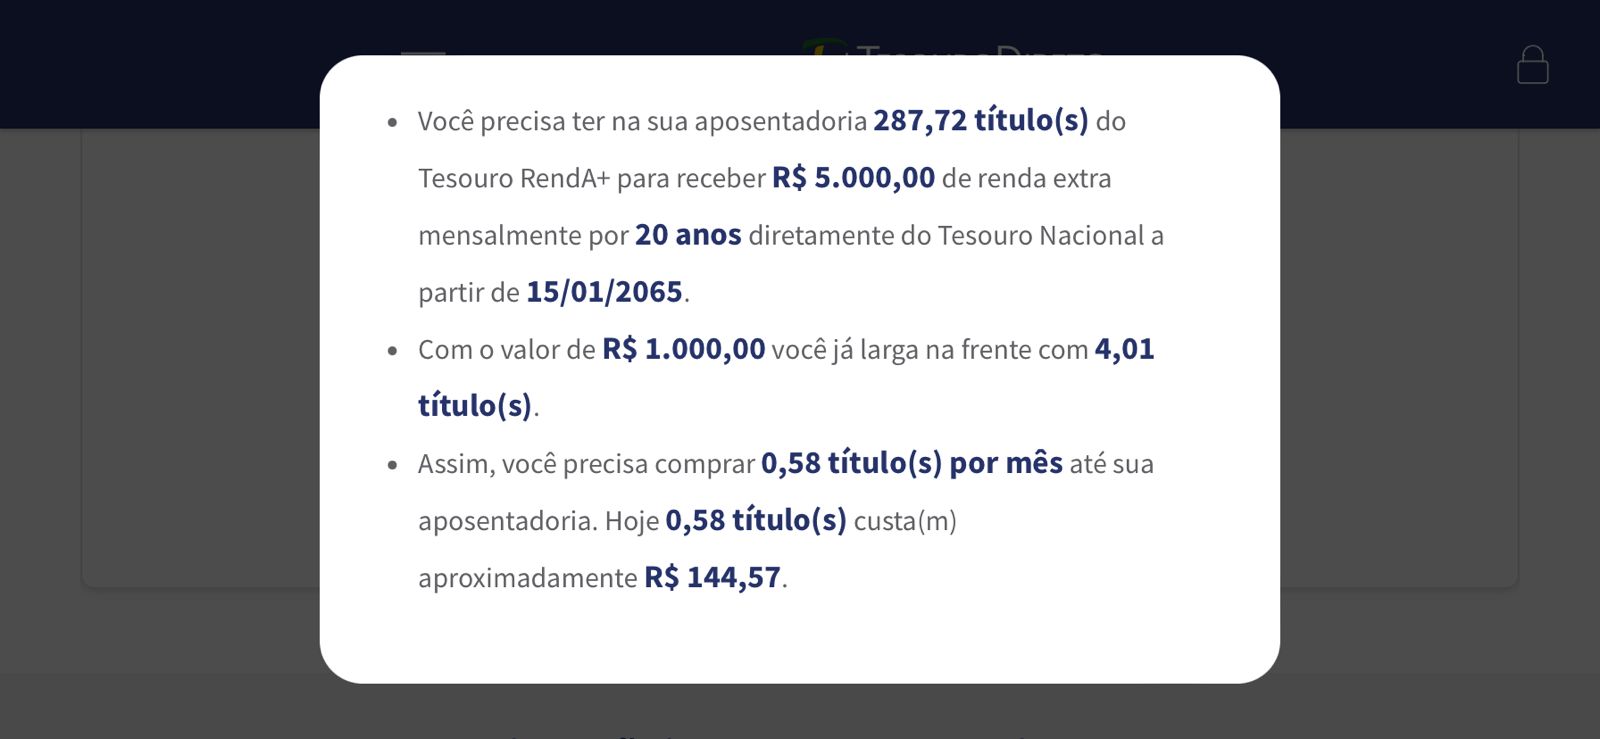 Simulação: quanto é preciso investir no Tesouro Renda+ para ter rendimentos de R$ 5.000,00 na aposentadoria